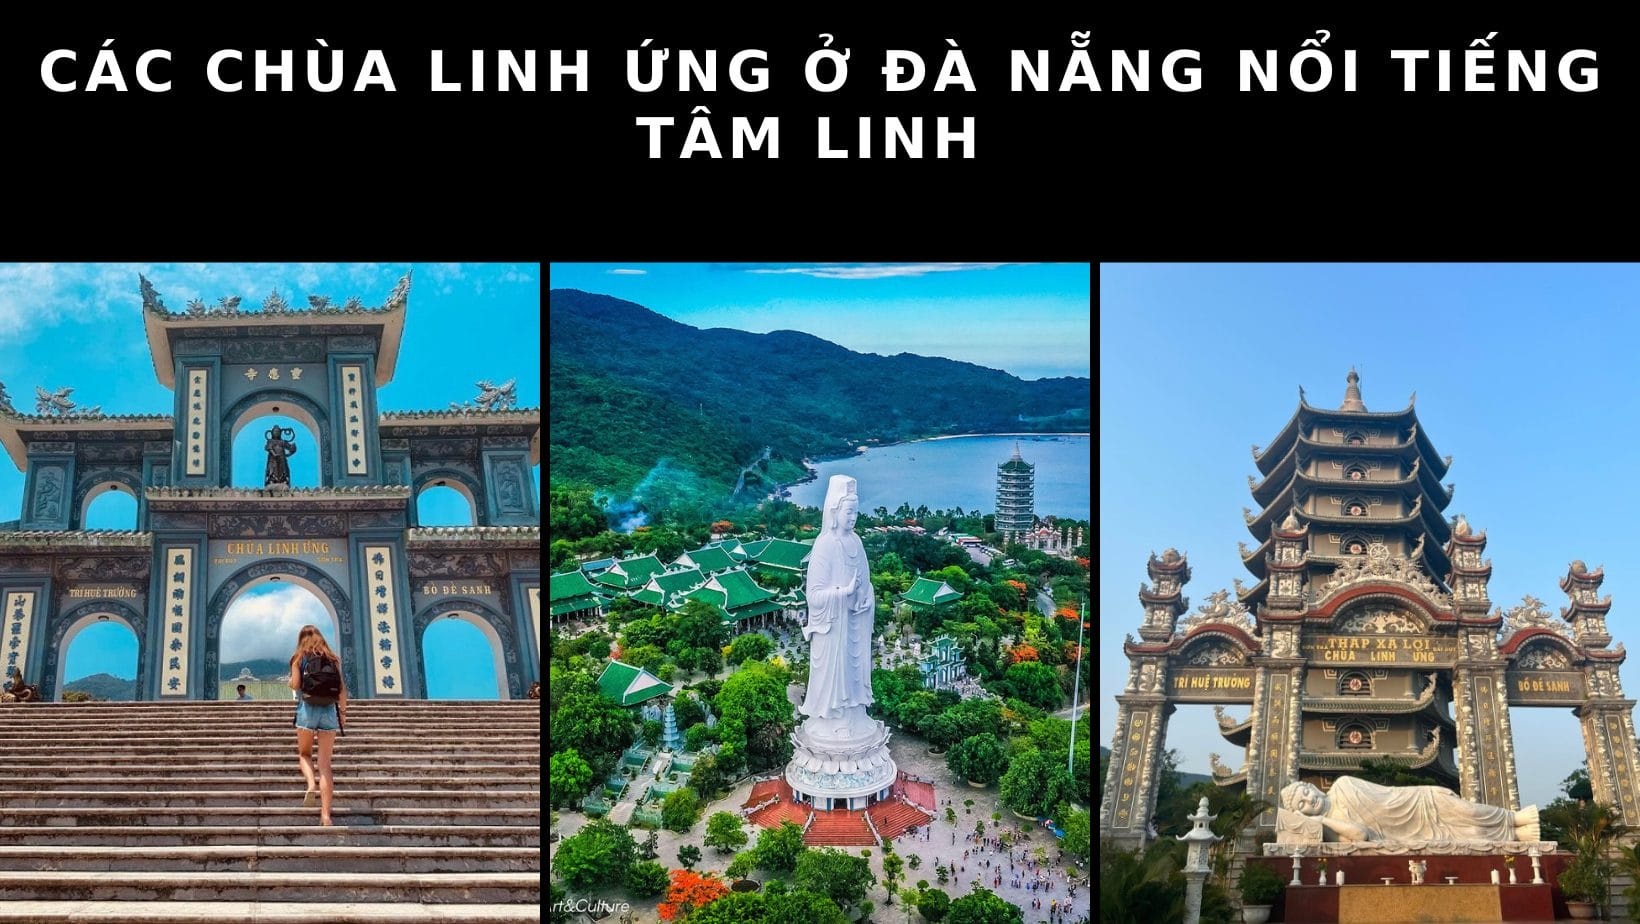 Các chùa Linh Ứng ở Đà Nẵng nổi tiếng tâm linh